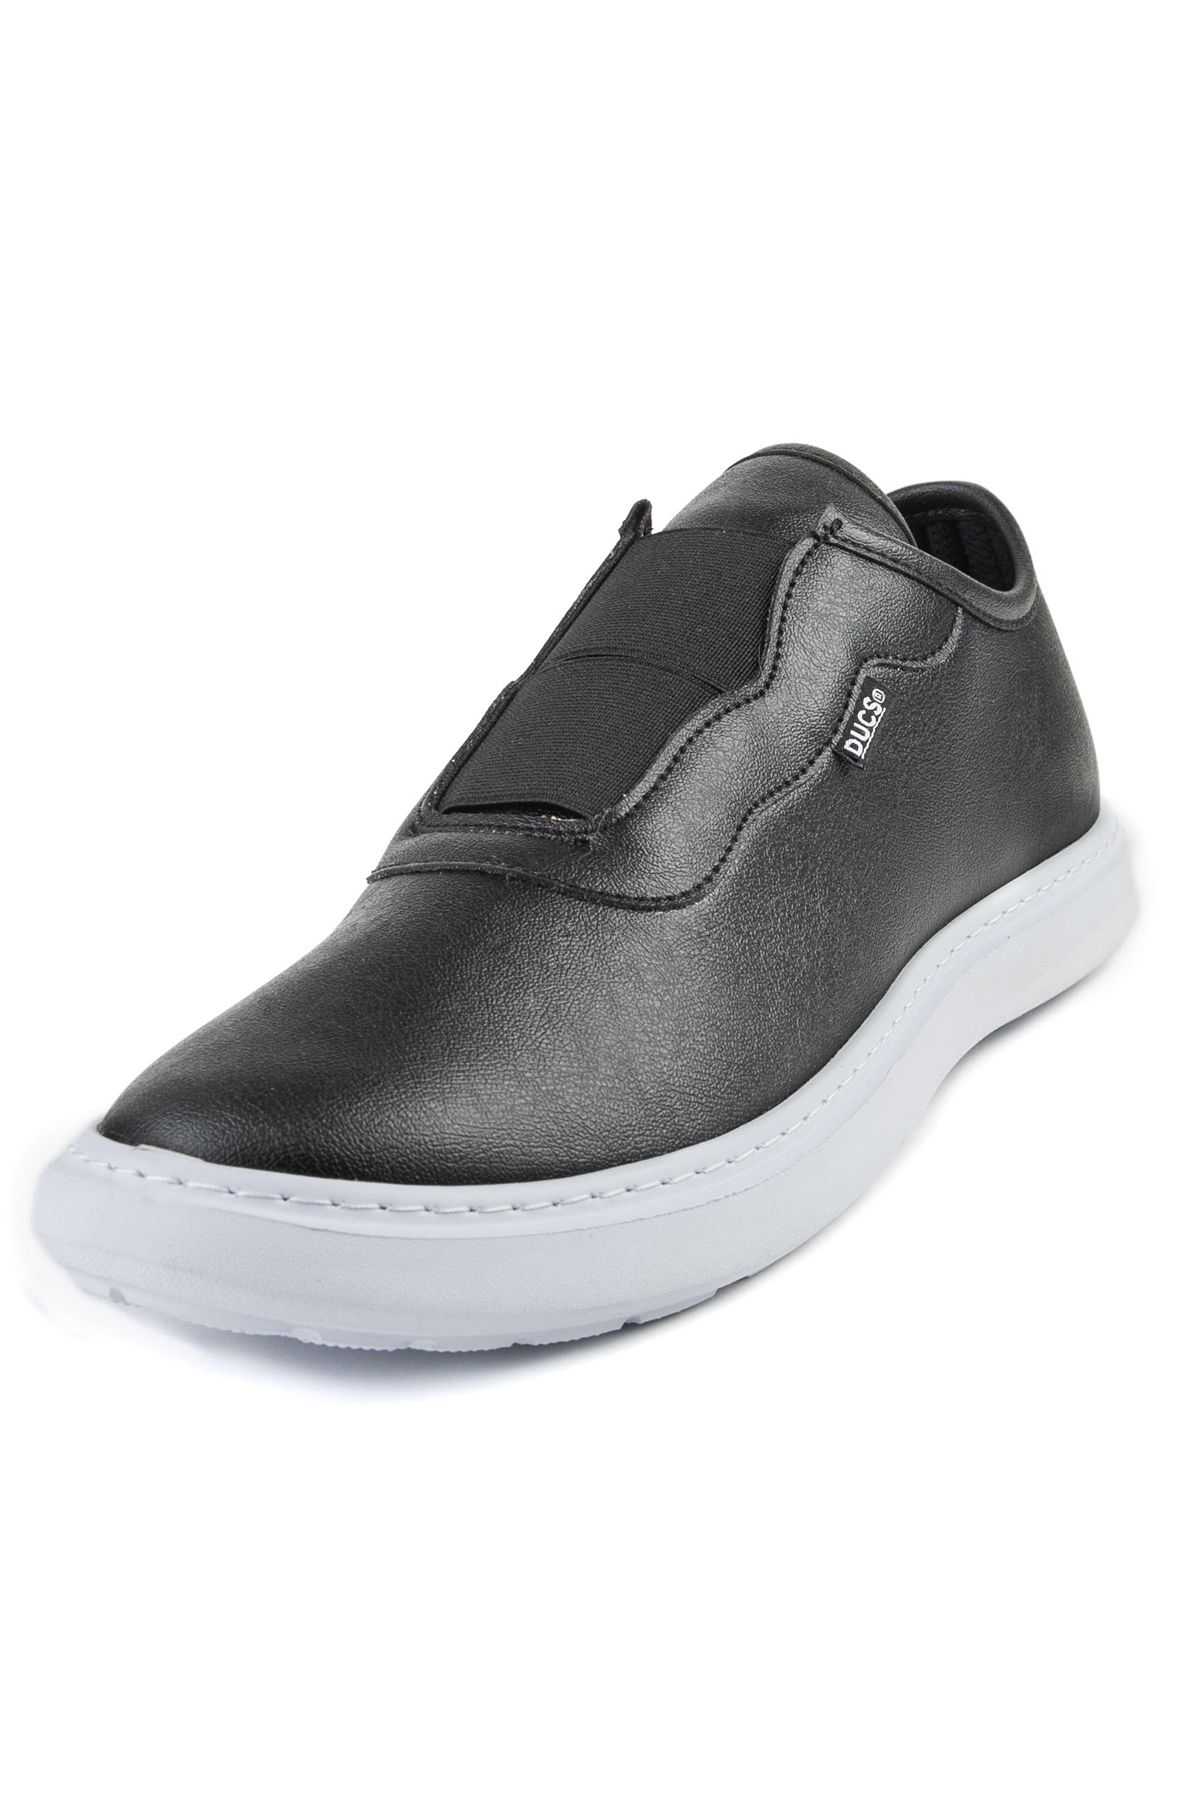 DUCS Ultra Hafif Sneaker Rahat Loafer Ayakkabı Esnek Yürüyüş Ayakkabısı Unisex Casual Ayakkabı Siyah Bt